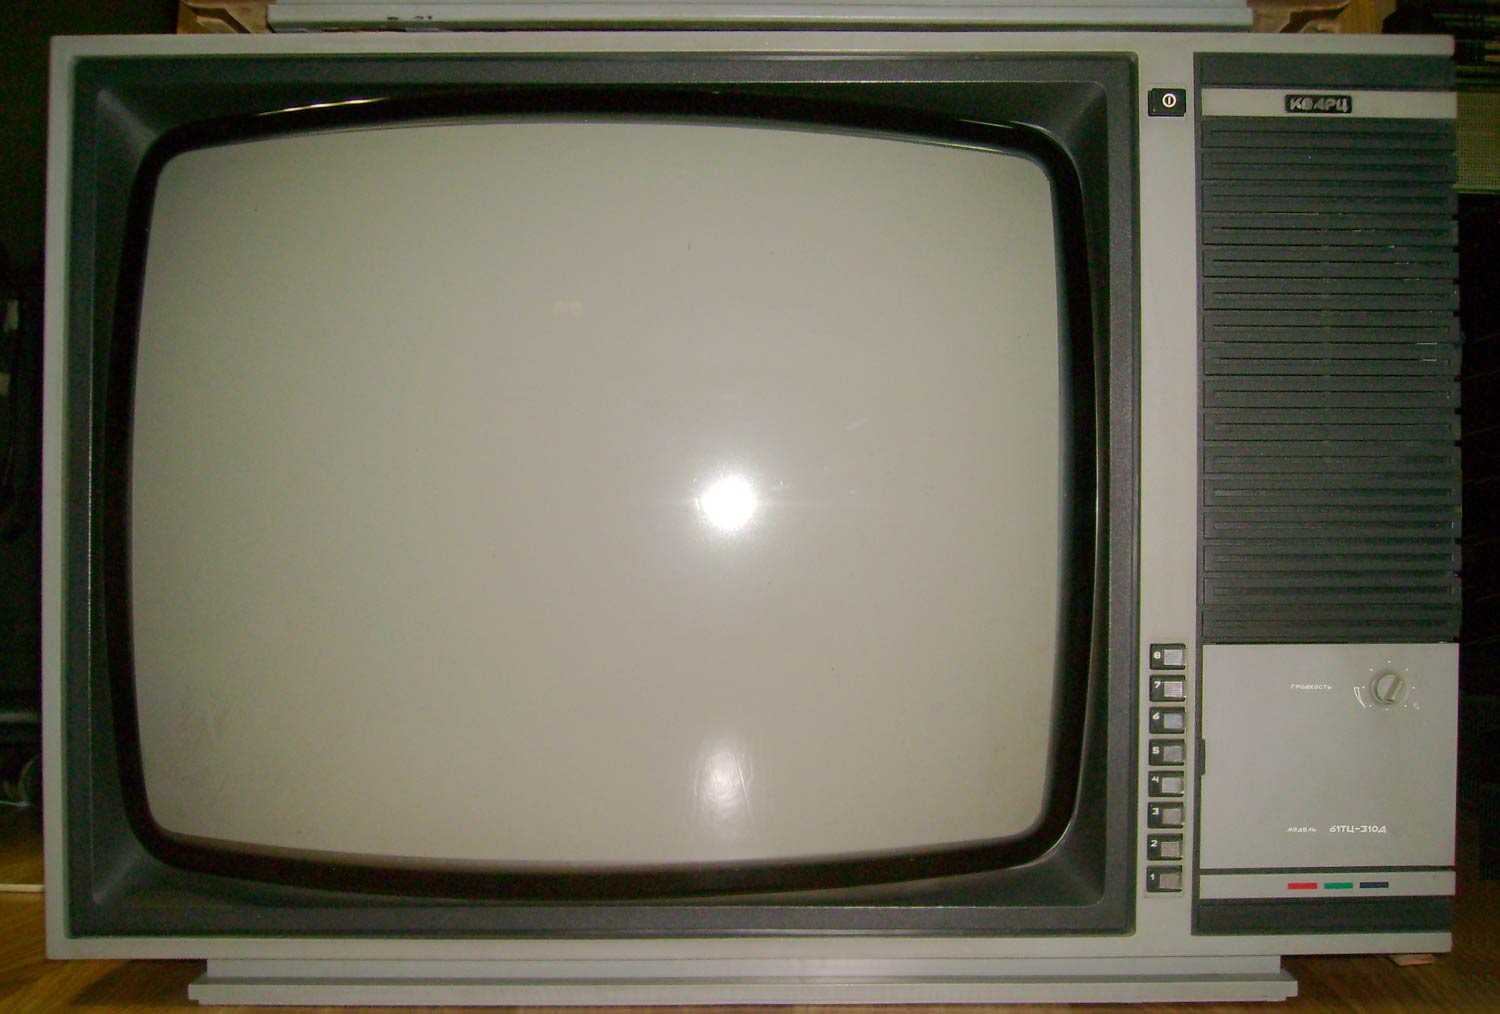 Купить телевизор 80 см. Кварц 61тц-310д. Кварц 310 телевизор. Телевизор кварц цветной 310д. Телевизор кварц цветной 61тц-310д.